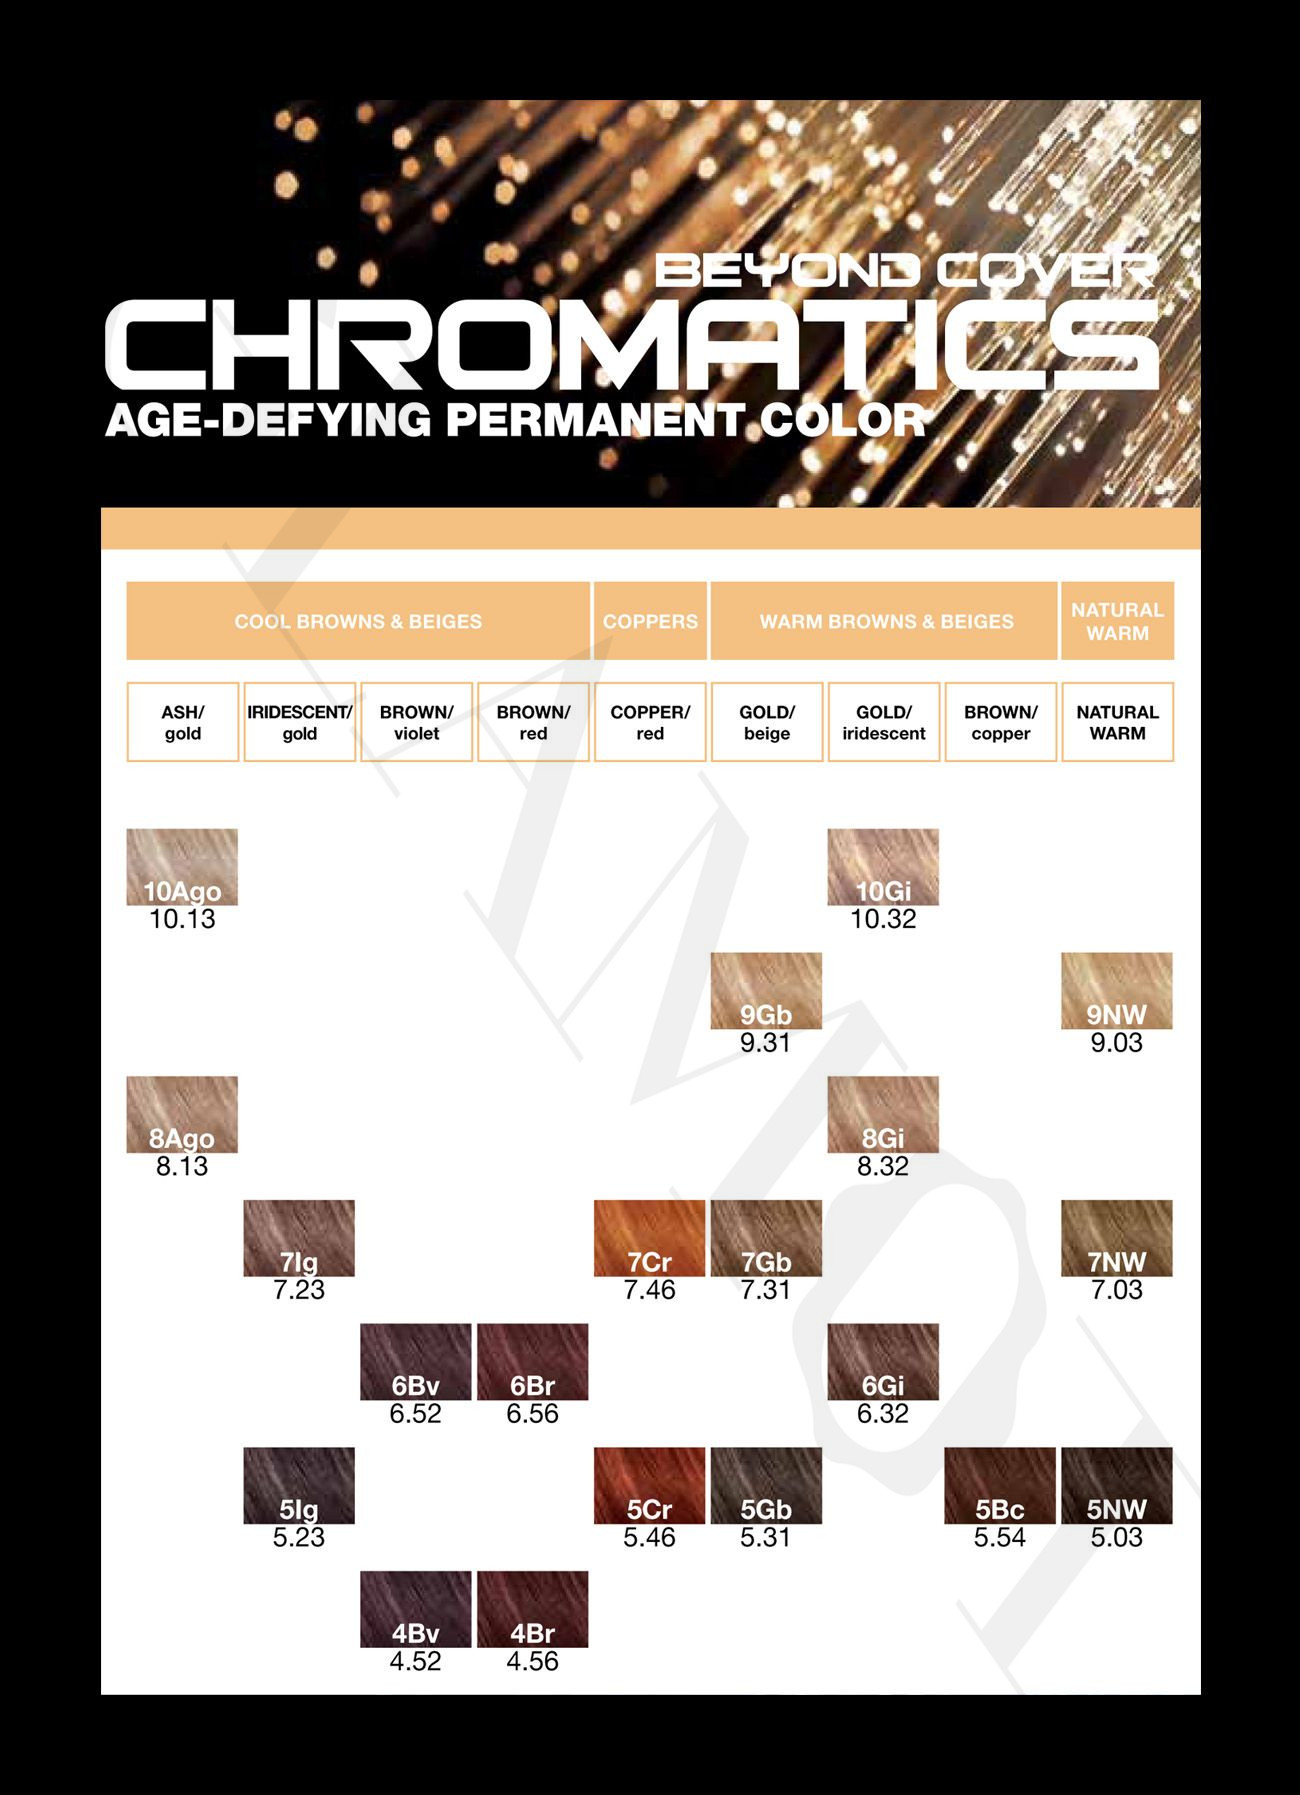 redken-chromatics-beyond-cover-ods-color-for-gray-hair-glamot